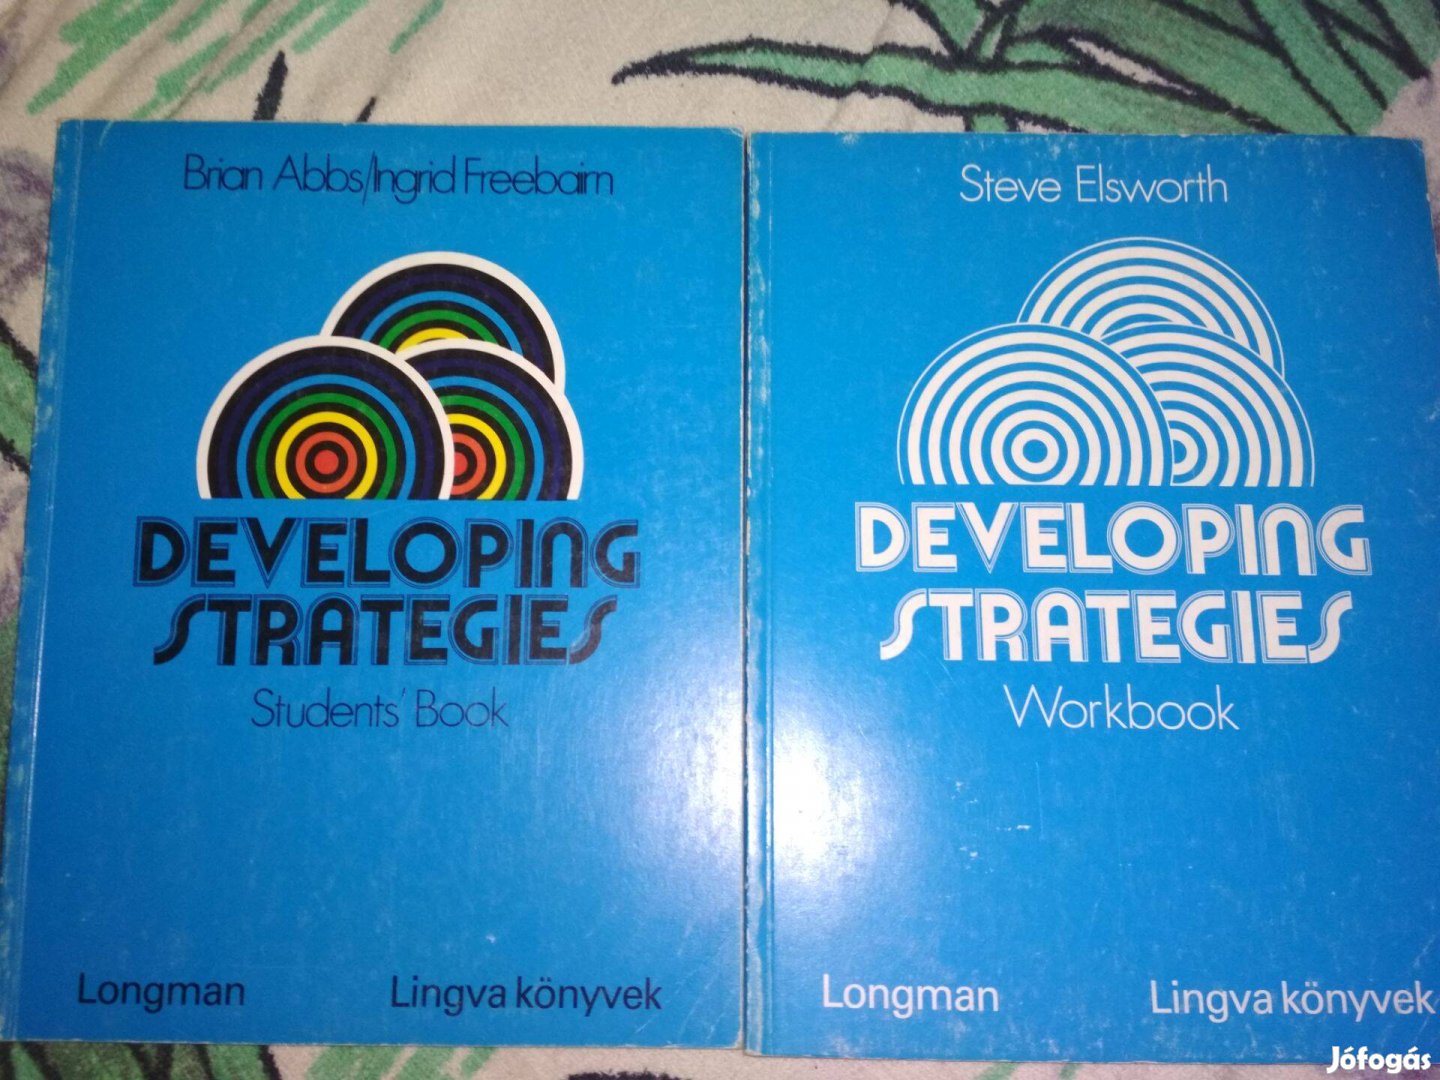 Strategies nyelvkönyvek eladók